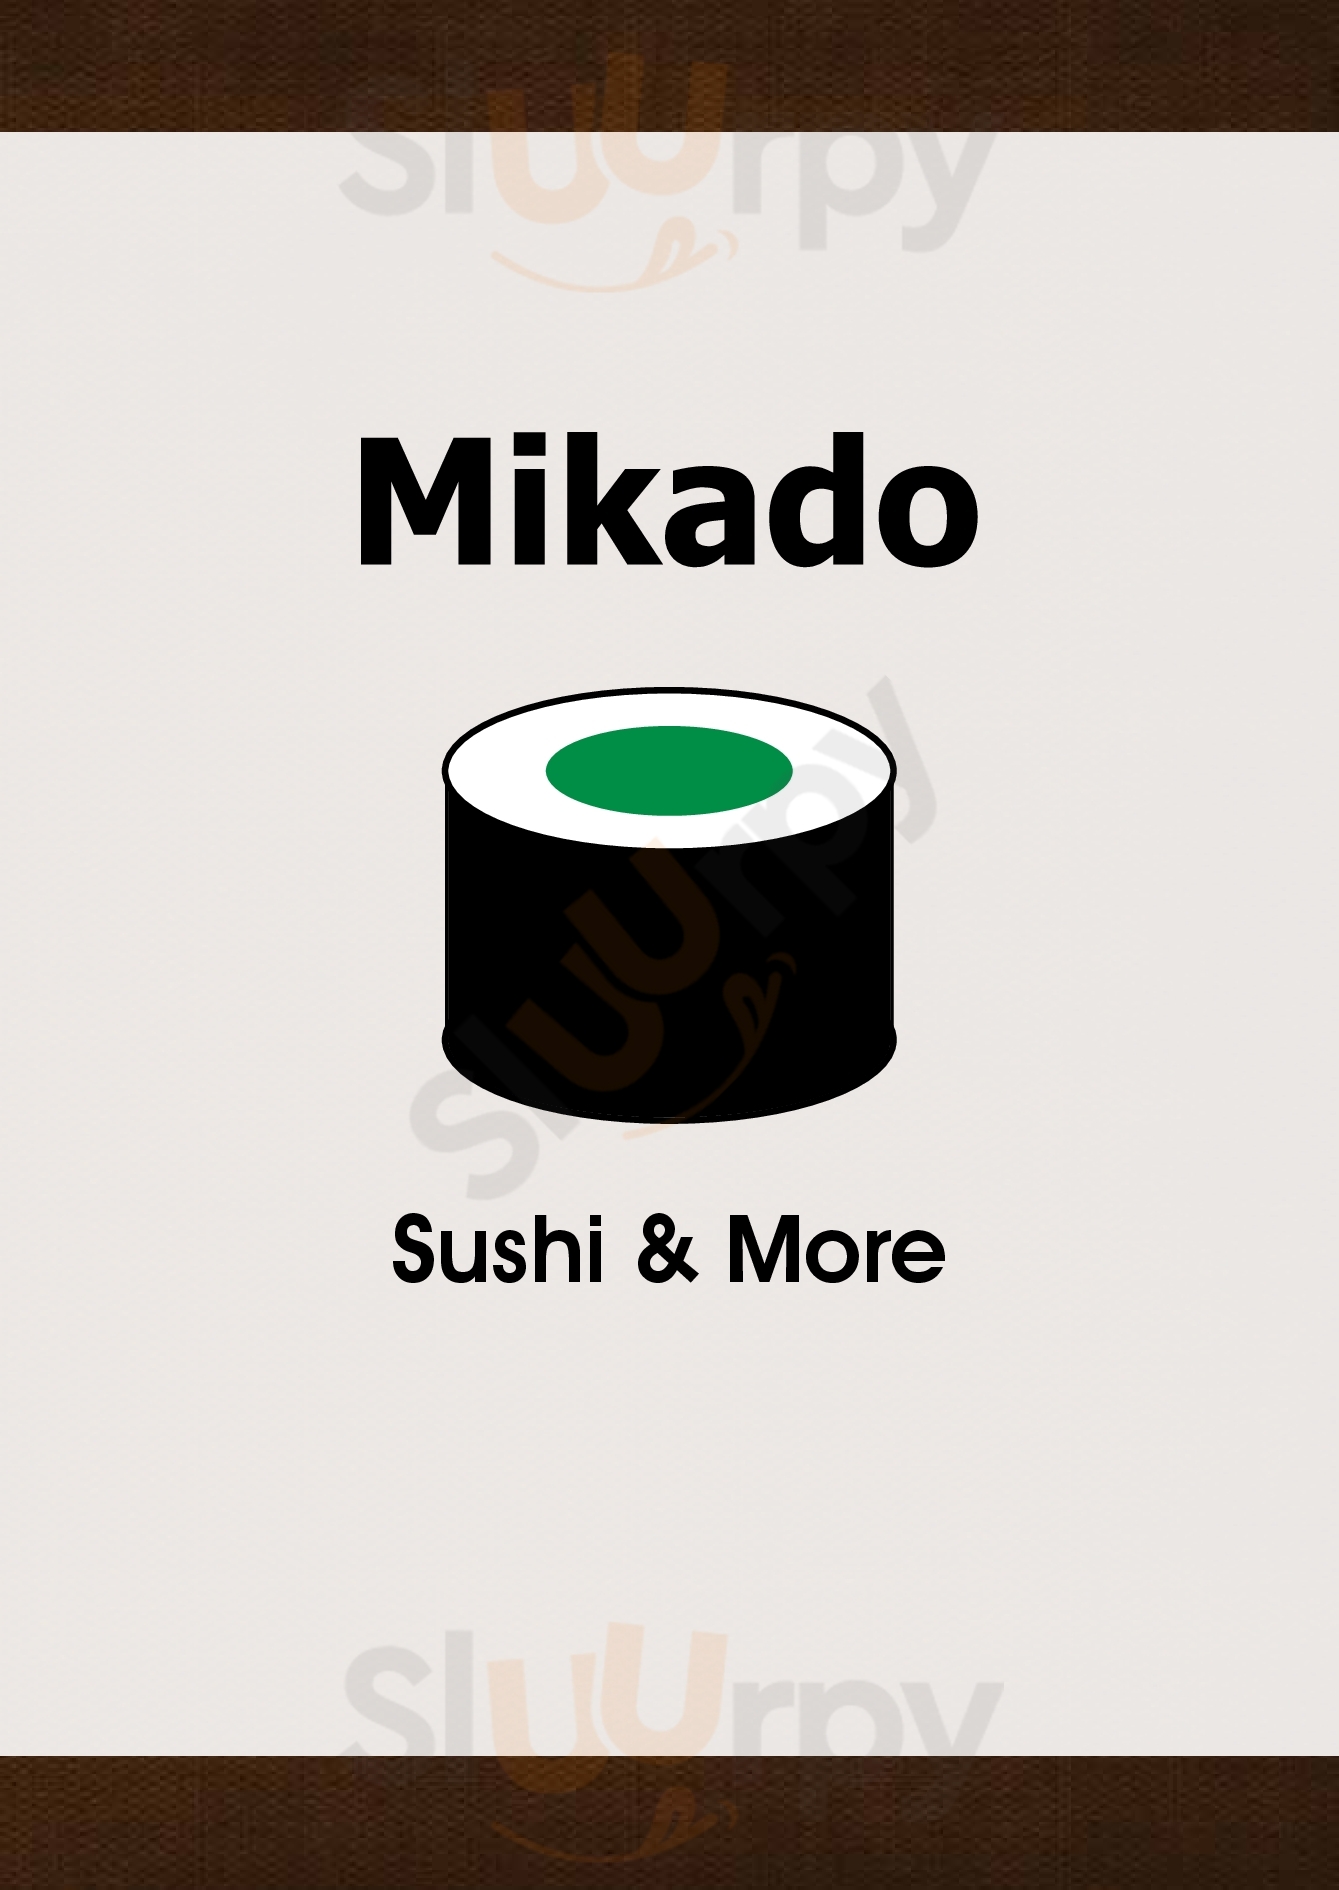 Mikado Restaurant Siegburg Menu - 1